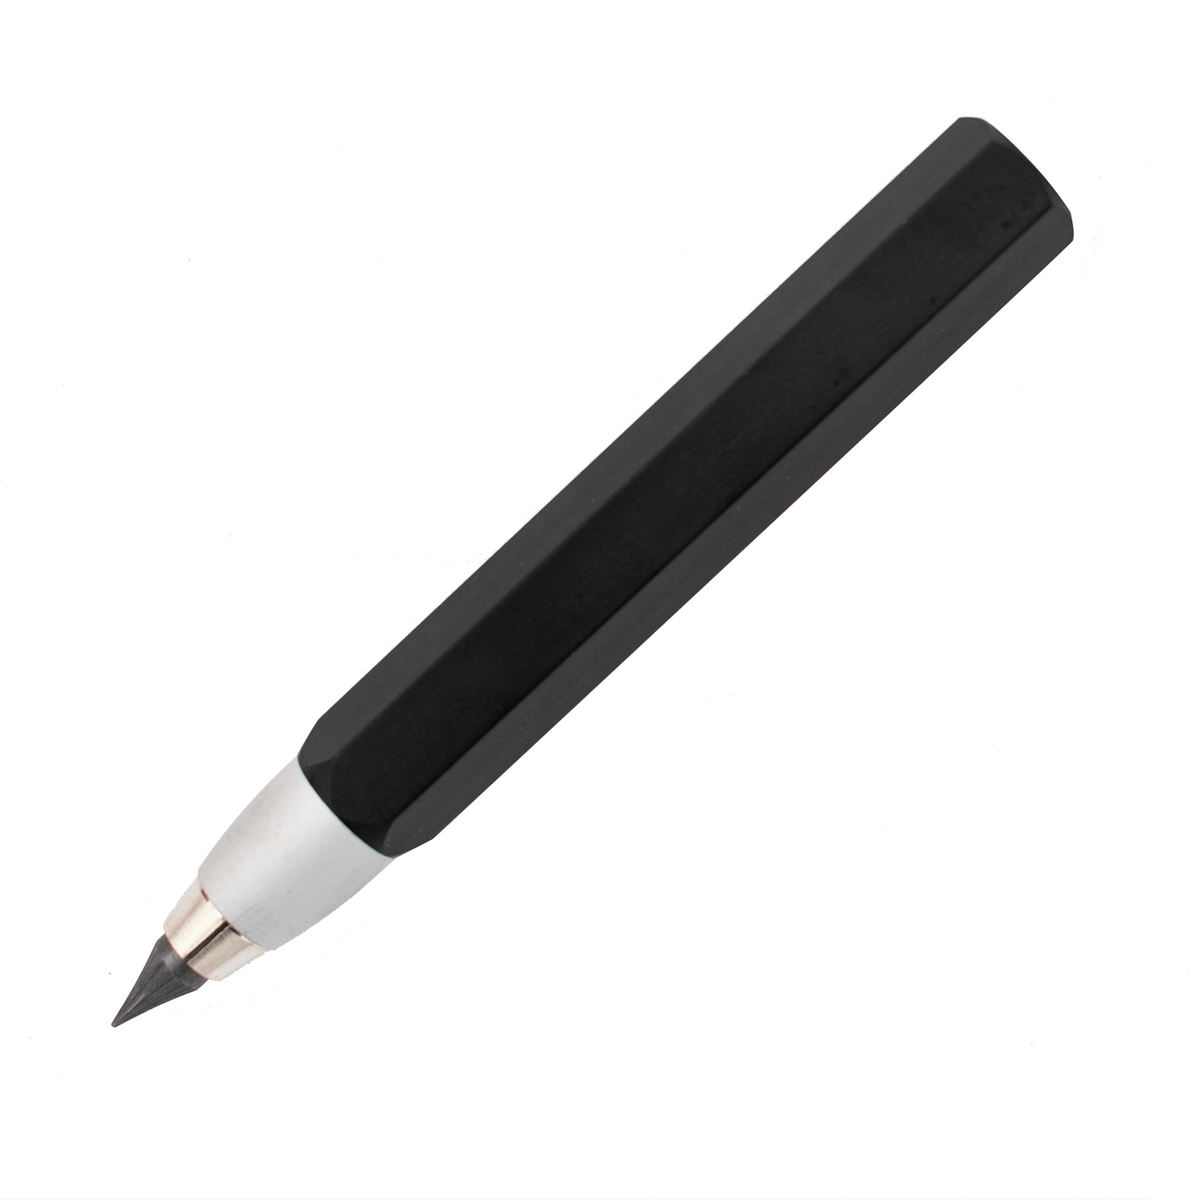 Worther Profil 5.6 mm Sketch Pencil, Natural Aluminum